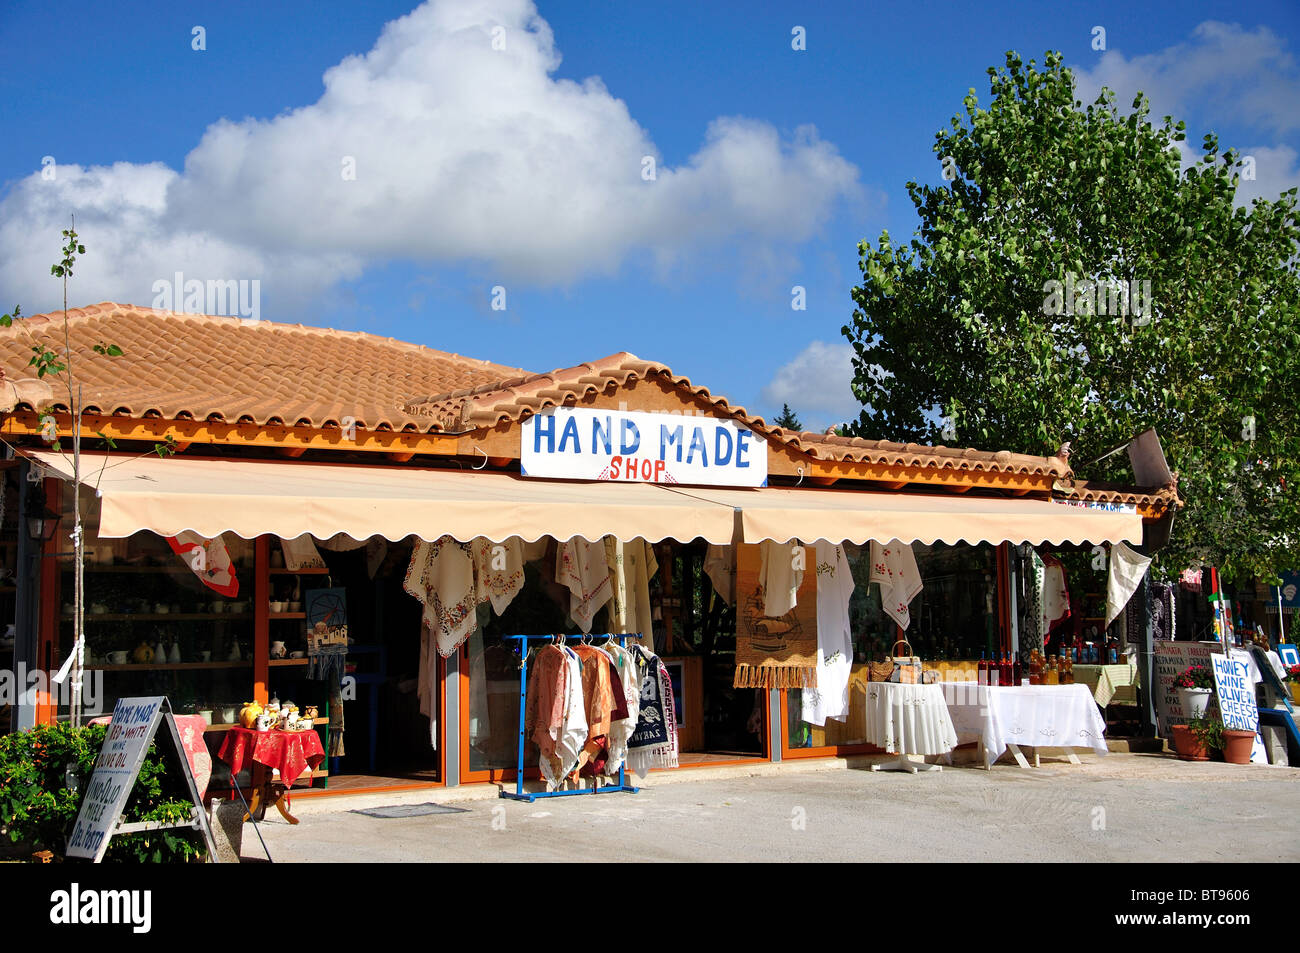 Les produits locaux et une boutique de souvenirs, Anafonitria, Zante, îles Ioniennes, Grèce Banque D'Images